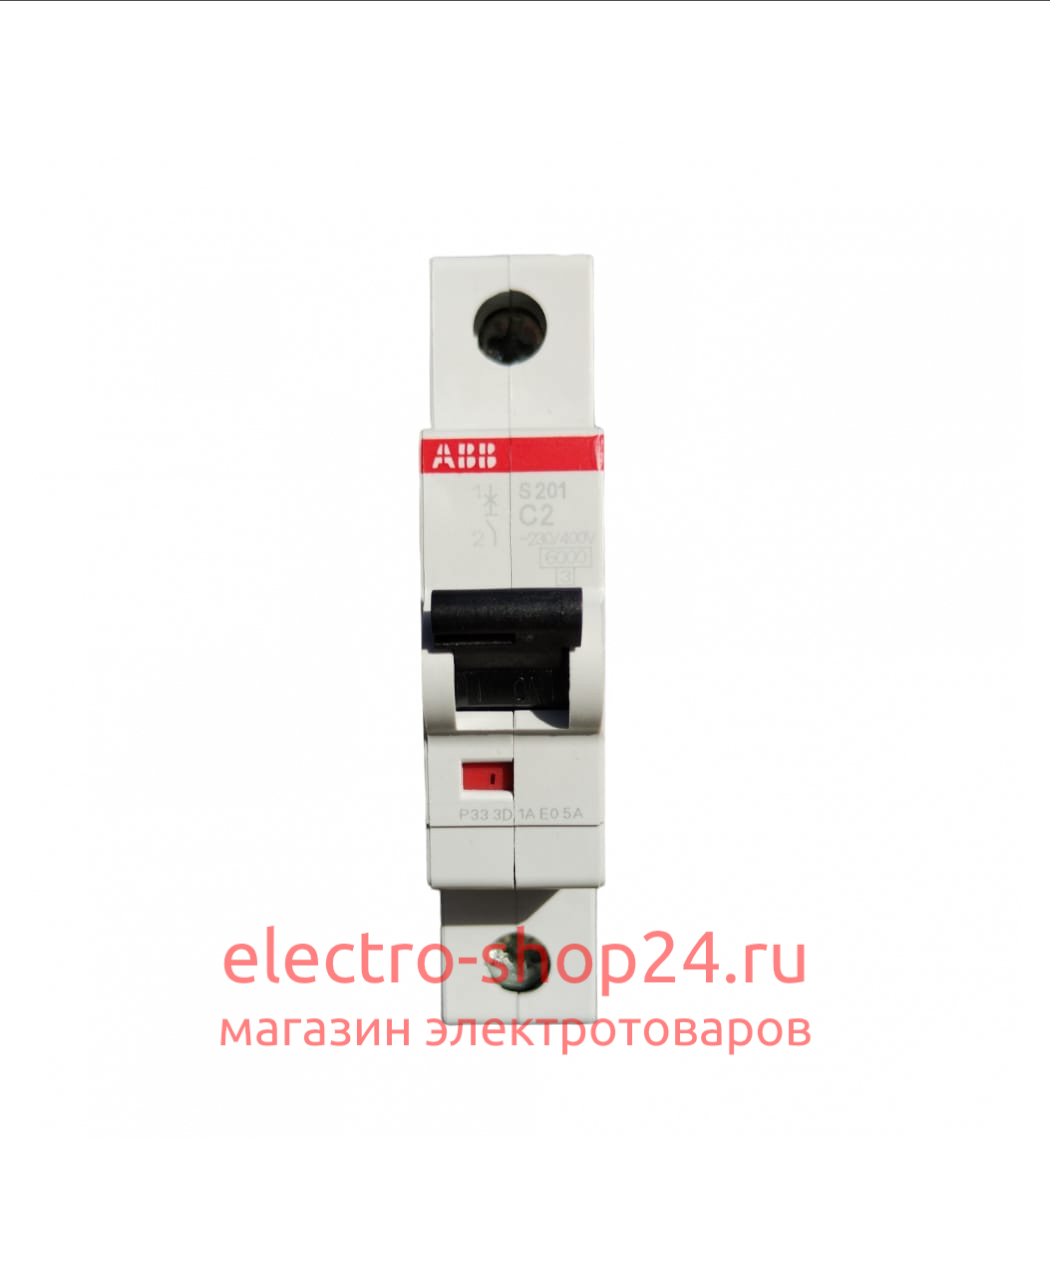 S201 C2 Автоматический выключатель 1-полюсный 2А 6кА (хар-ка C) ABB 2CDS251001R0024 2CDS251001R0024 - магазин электротехники Electroshop